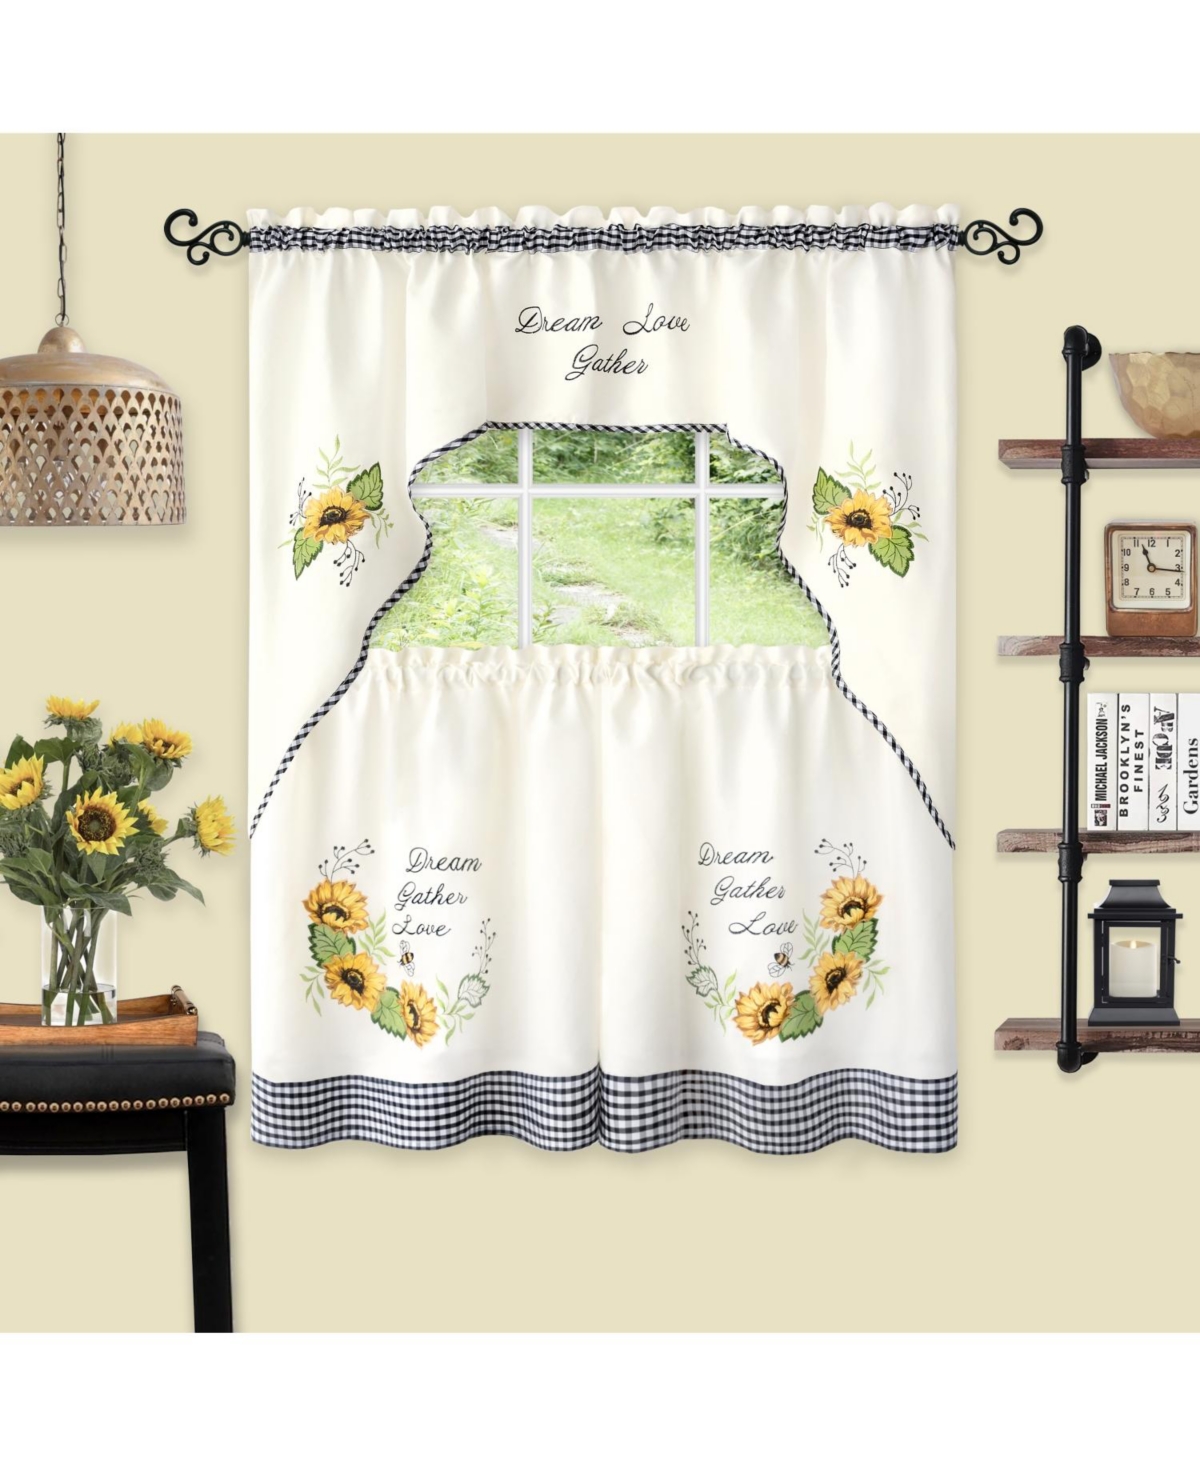 Montauk Accents "Dream, Love, Gather" Embellished Sunflowers 3 Piece Kitchen Curtain Tier Set - Beige